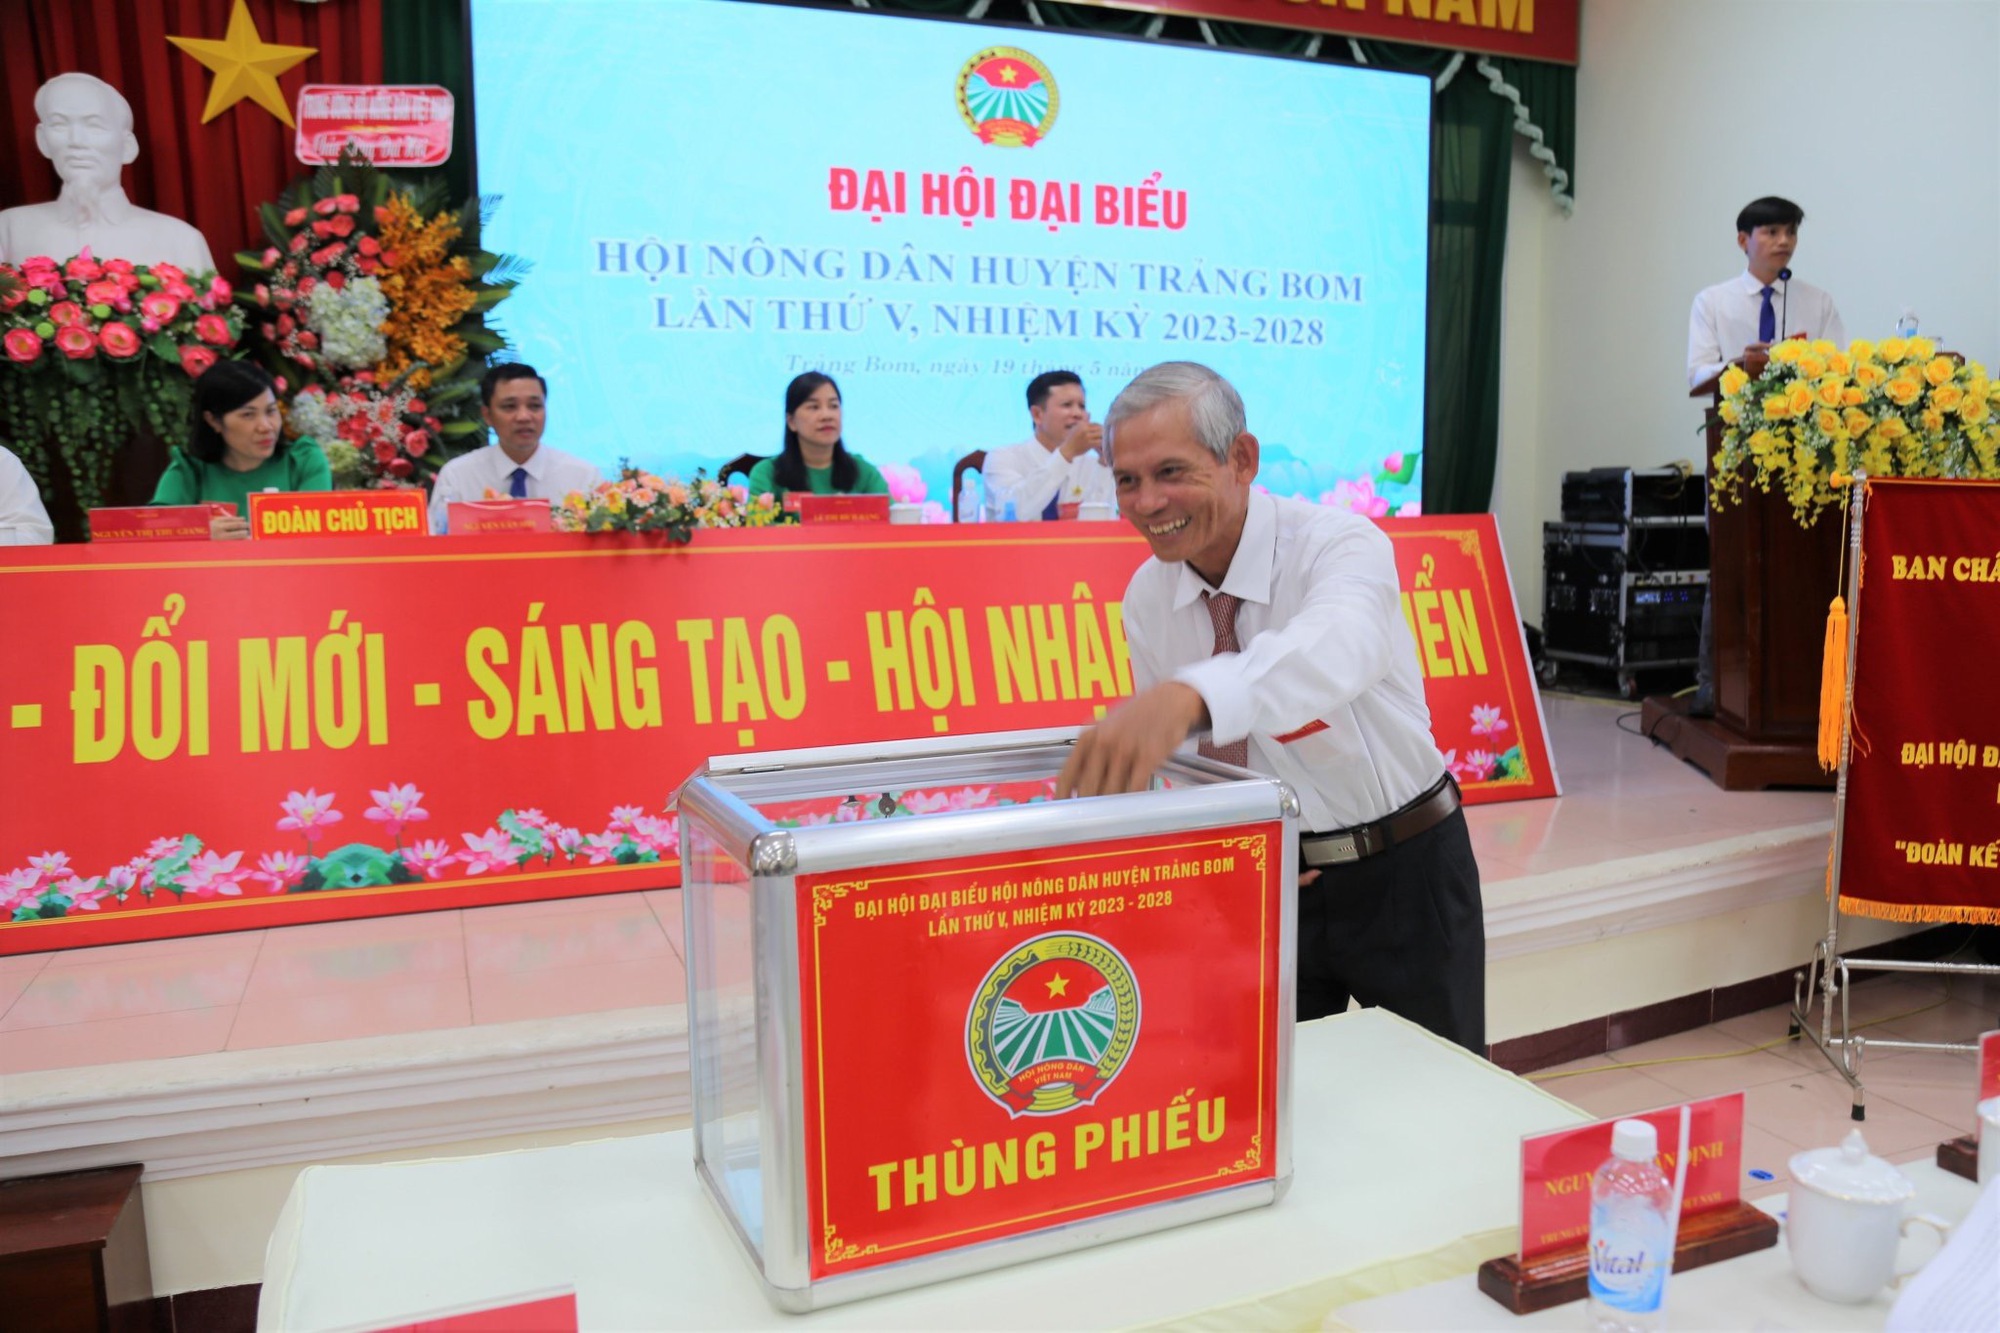 Phó Chủ tịch TƯ Hội NDVN Nguyễn Xuân Định dự Đại hội đại biểu Hội Nông dân huyện Trảng Bom, Đồng Nai - Ảnh 7.